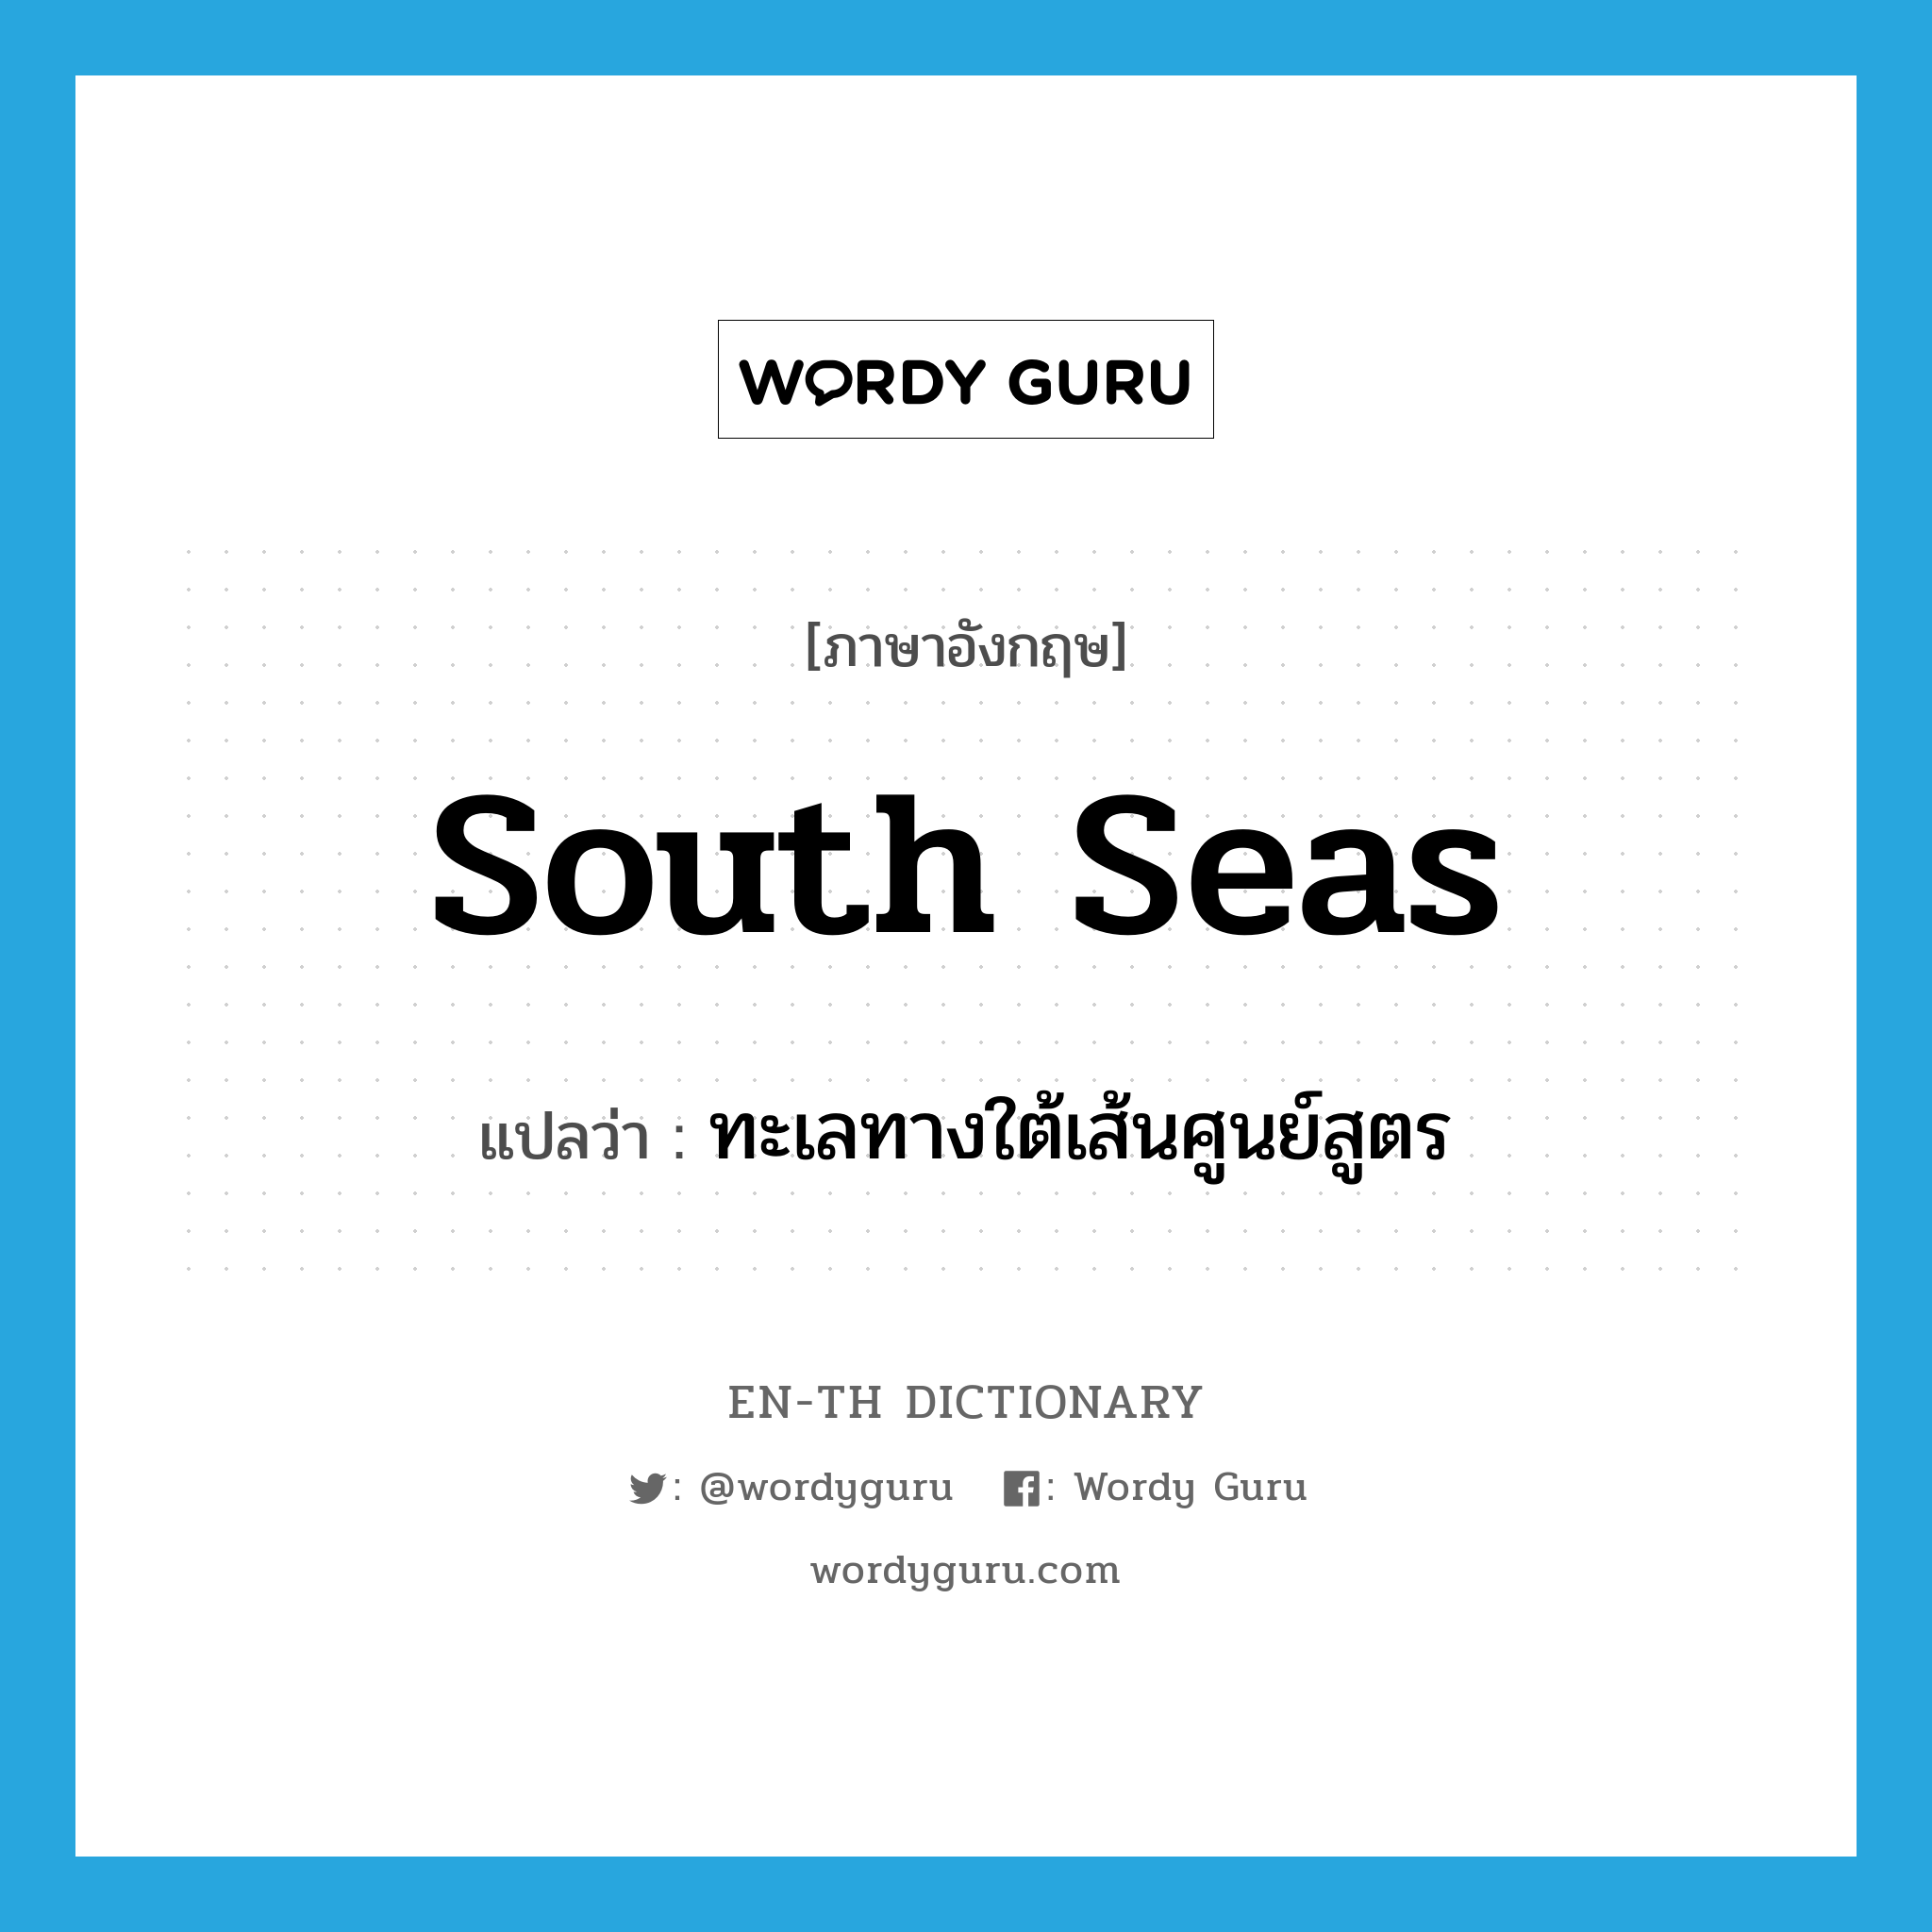 South Seas แปลว่า?, คำศัพท์ภาษาอังกฤษ South Seas แปลว่า ทะเลทางใต้เส้นศูนย์สูตร ประเภท N หมวด N